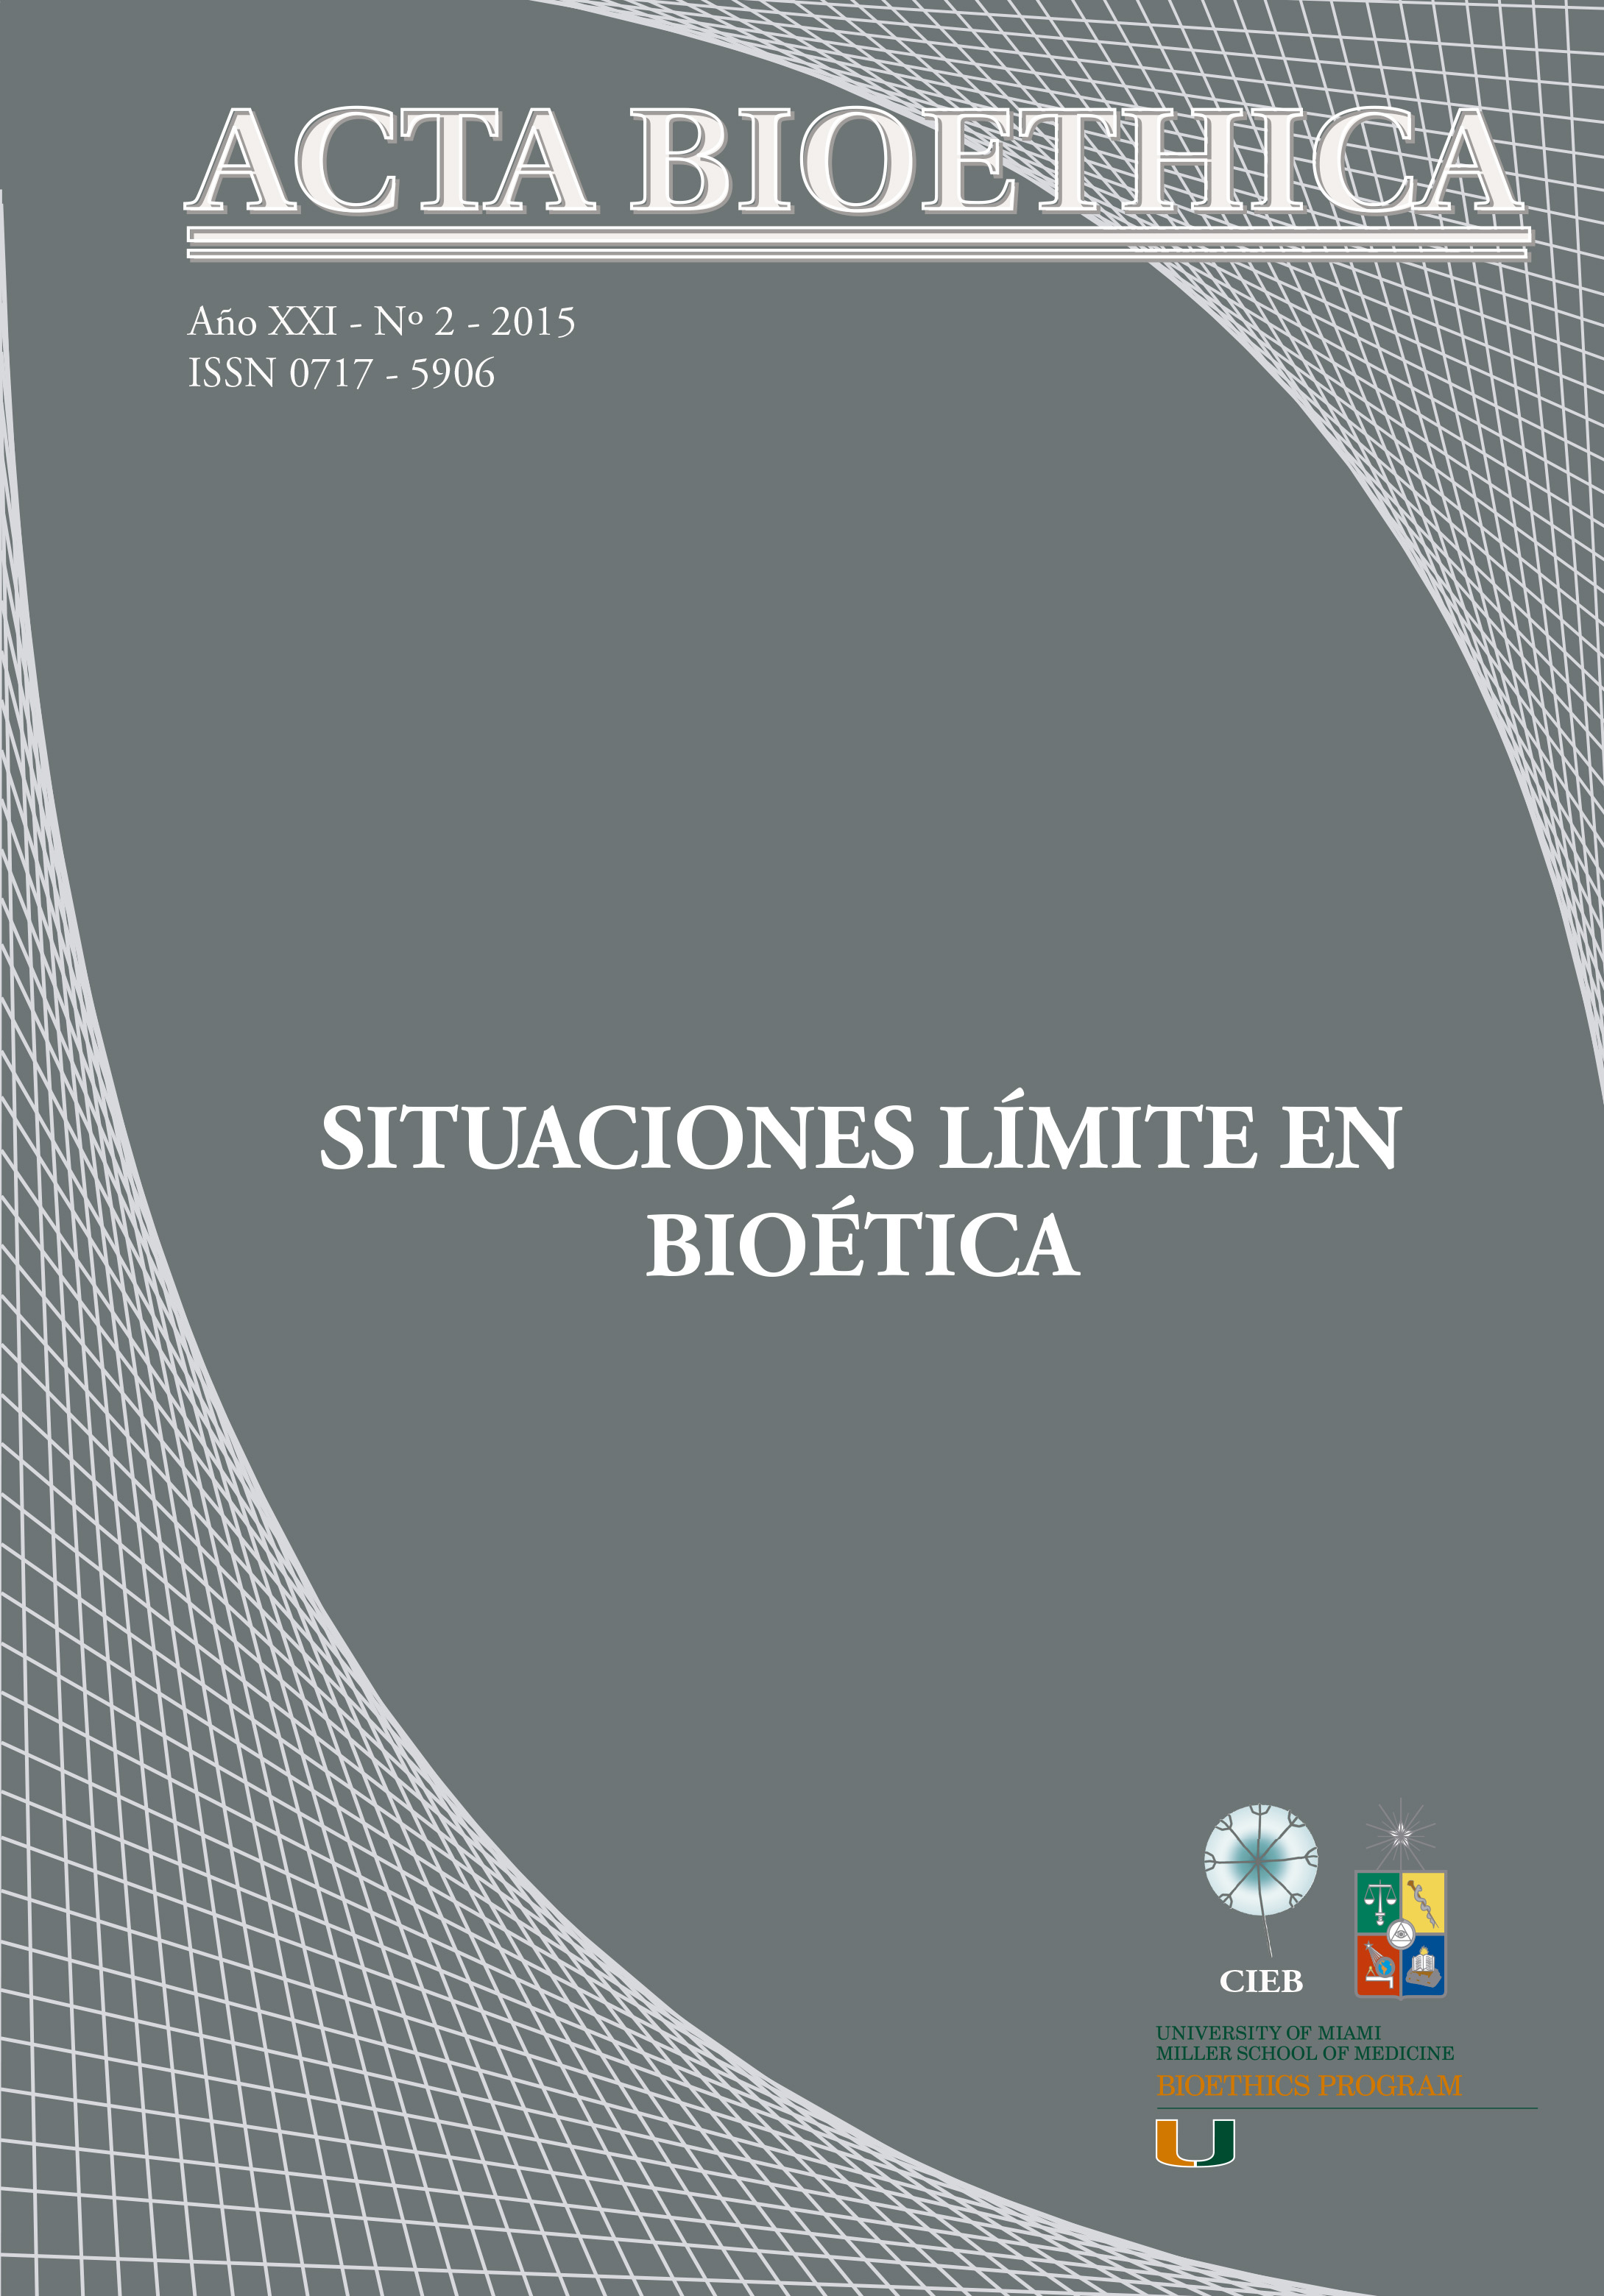 											View Vol. 21 No. 2 (2015): Situaciones límite en bioética
										